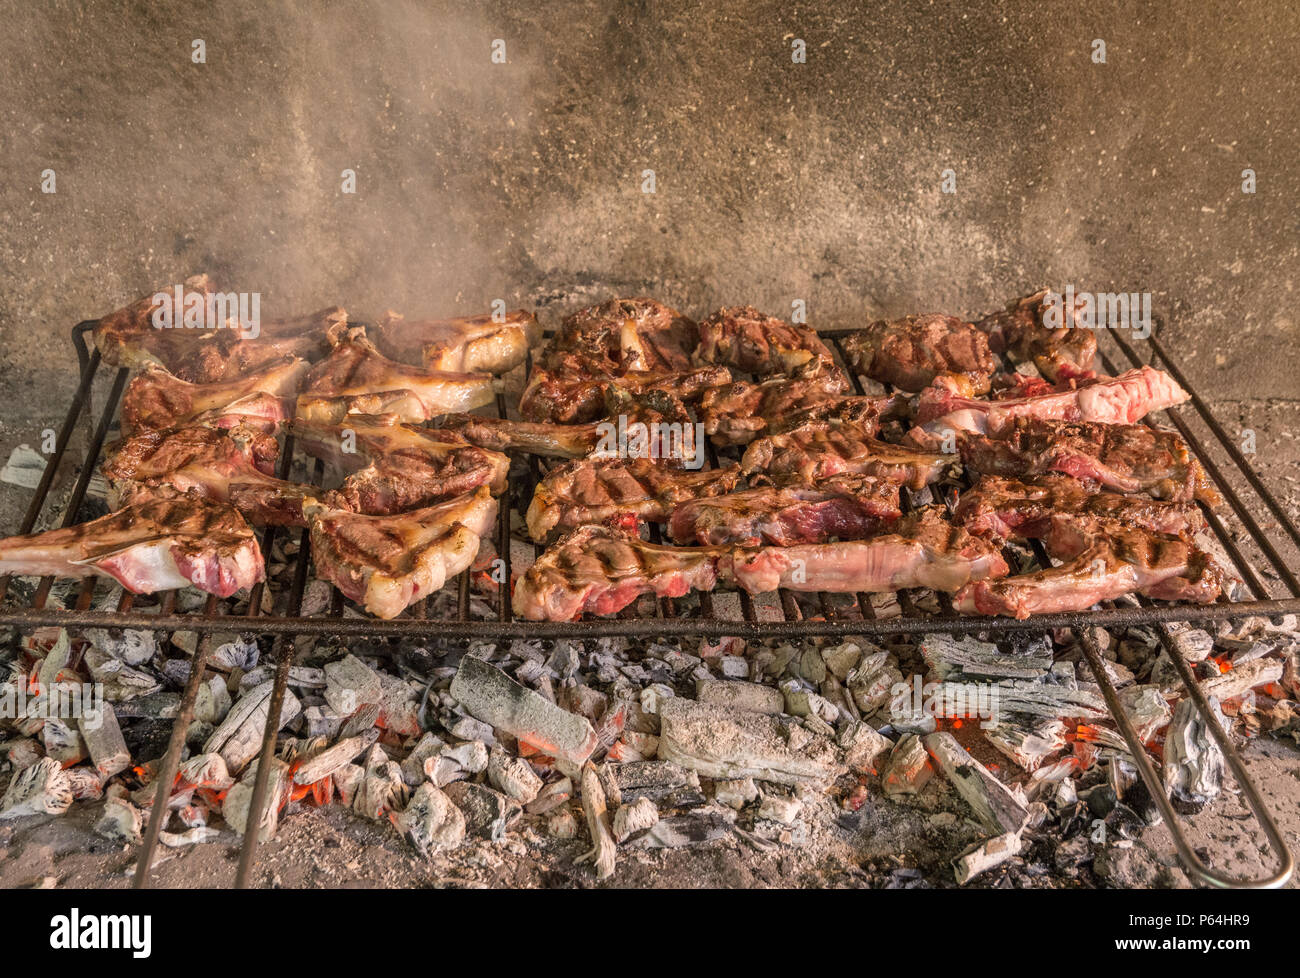 Grigliata di costolette di capra. Arrosto di carne su un barbecue in mattoni tipica barbecue in Sardegna, Italia. Messa a fuoco selettiva Foto Stock